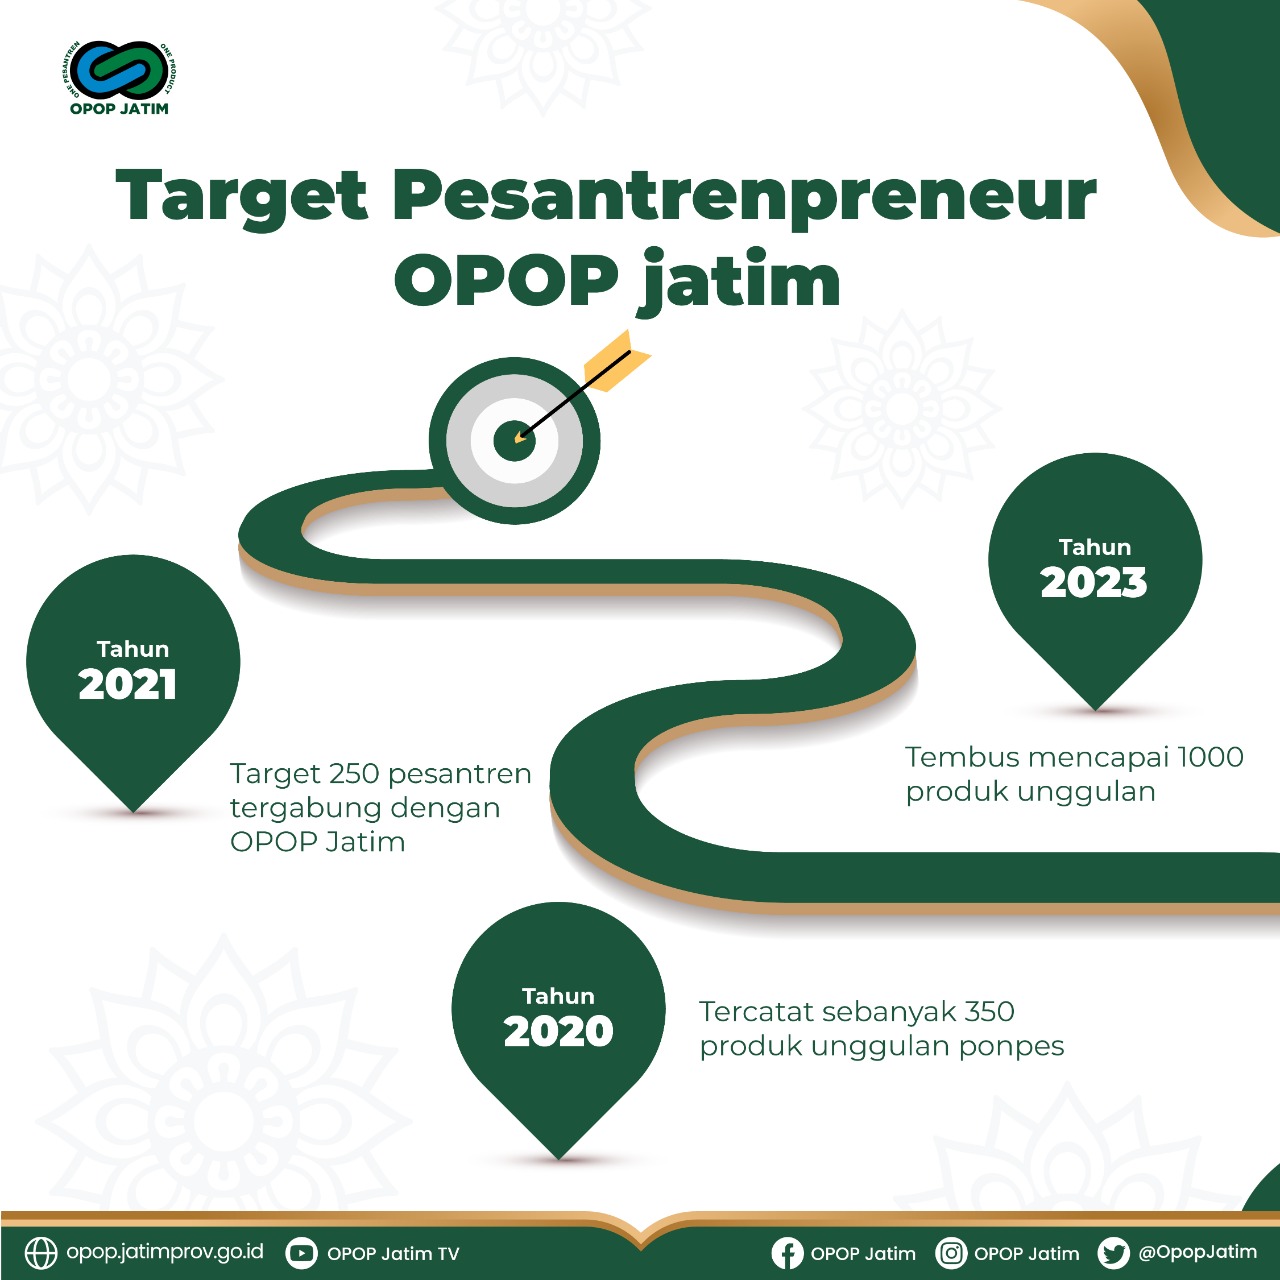 Target Pesantrenpreneur OPOP Jatim